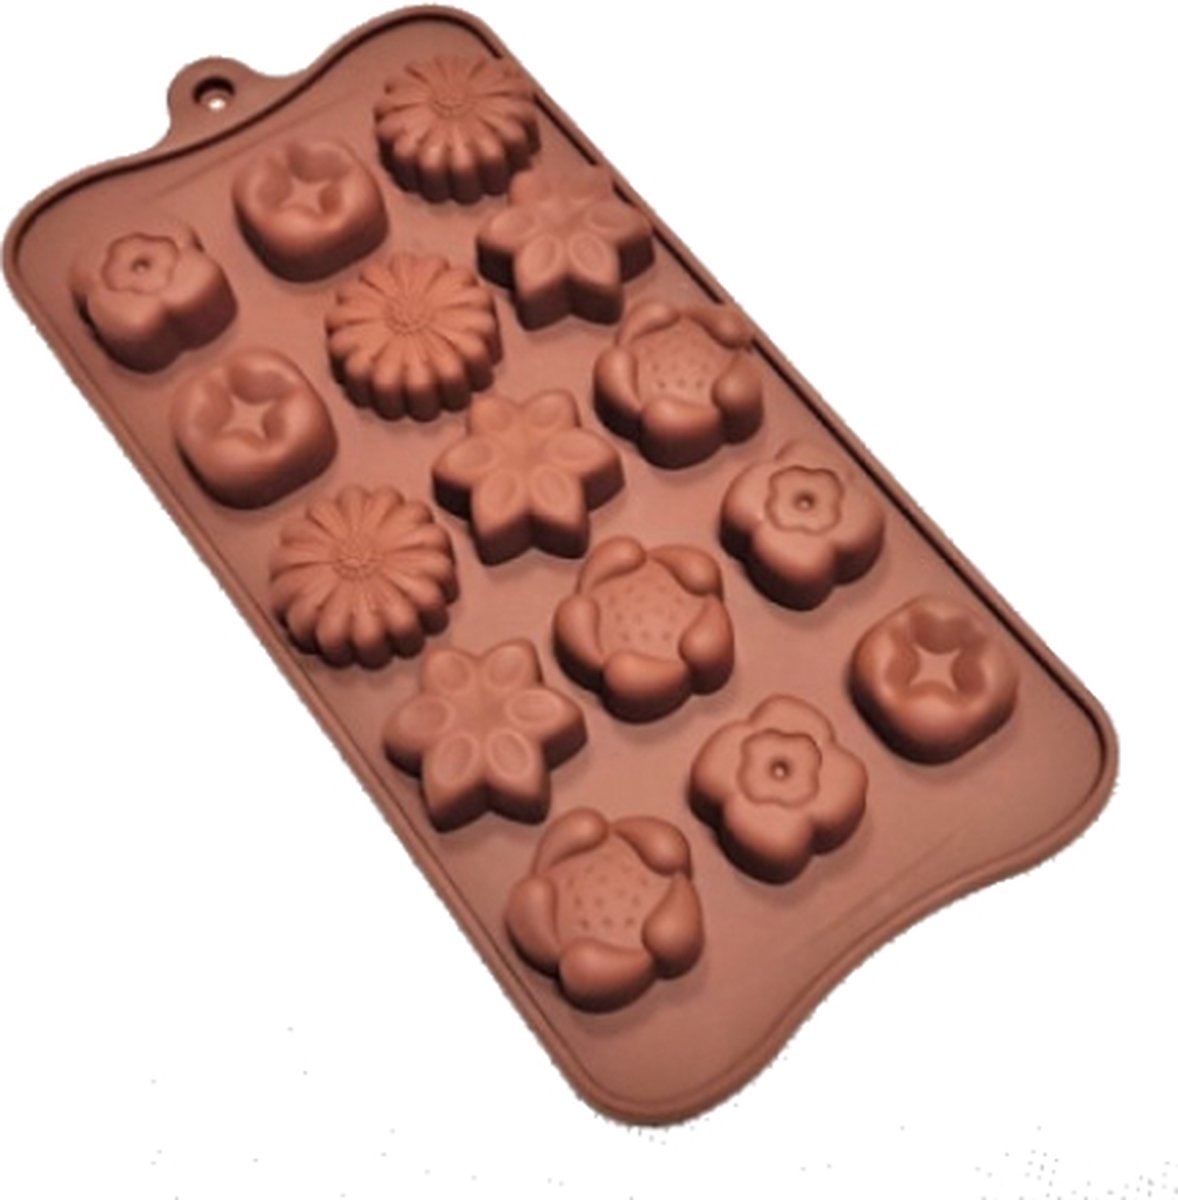 Luxe Siliconen mal voor Bloemen rozetchocolade 21.5 x 10cm - Chocolade vorm - Ruby chocolate (Roze chocolade) - Snoep / Bonbon chique mal - Geschikt voor oven en vaatwasser bestendigd.